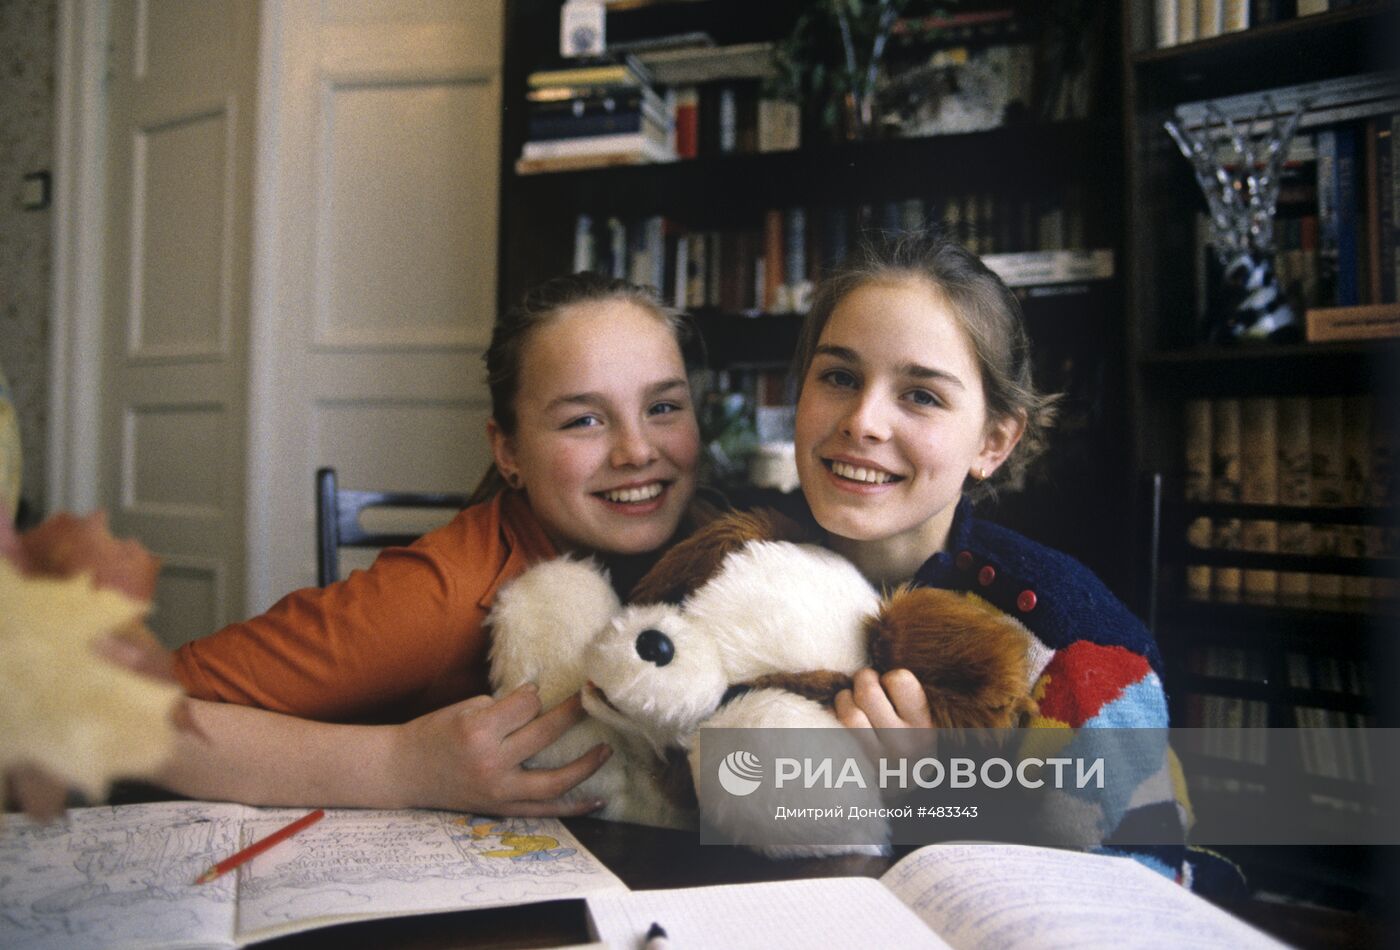 Фигуристка Е.Гордеева с младшей сестрой